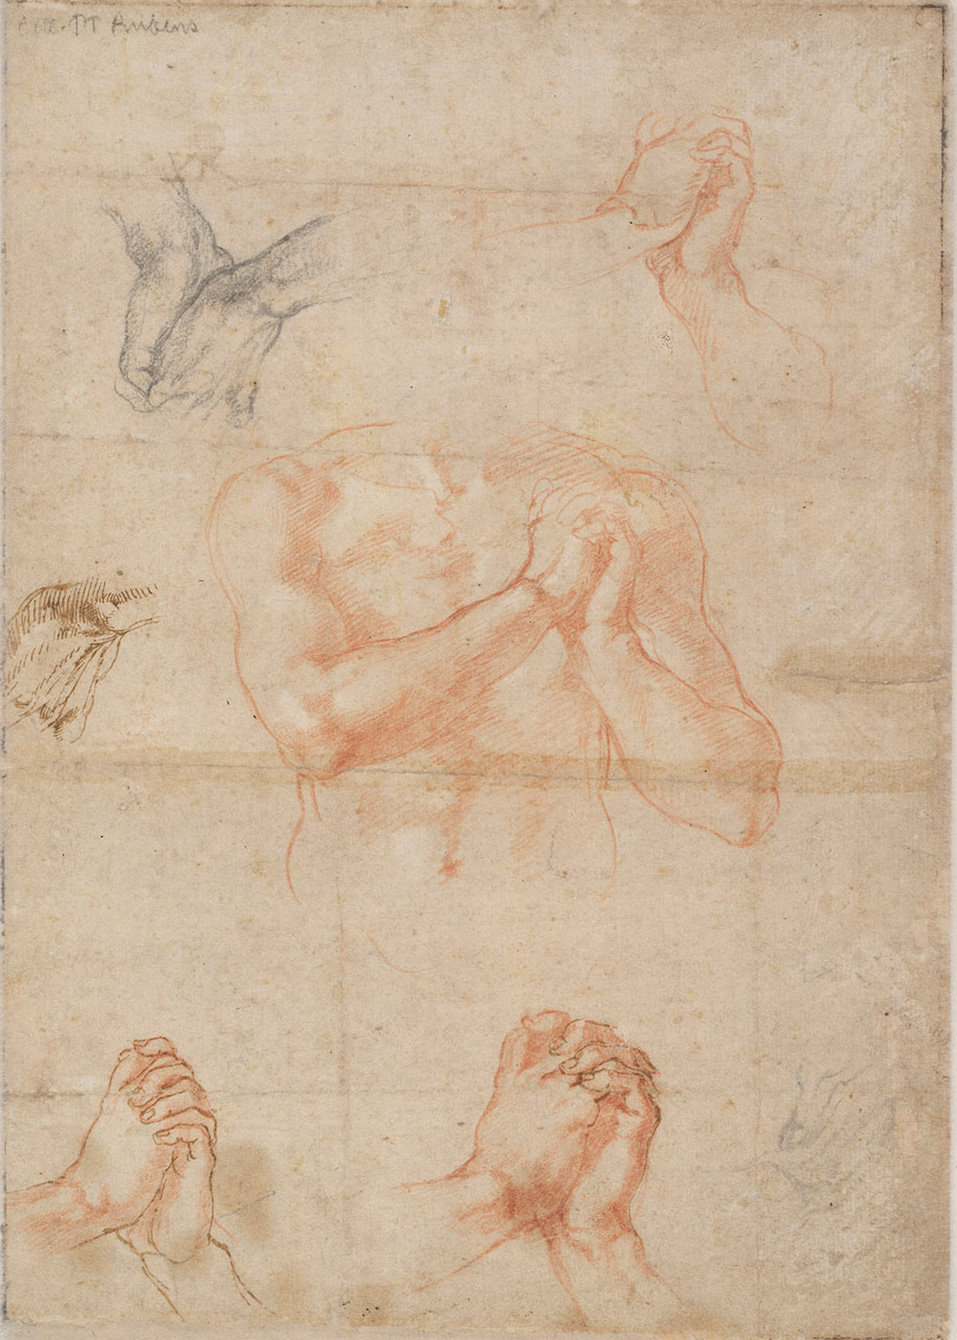 Michelangelo, Studio di mani e torso maschile (1512 circa; sanguigna, gessetto nero, penna su carta, 272 x 192 mm; Vienna, Albertina, inv. 120v)
